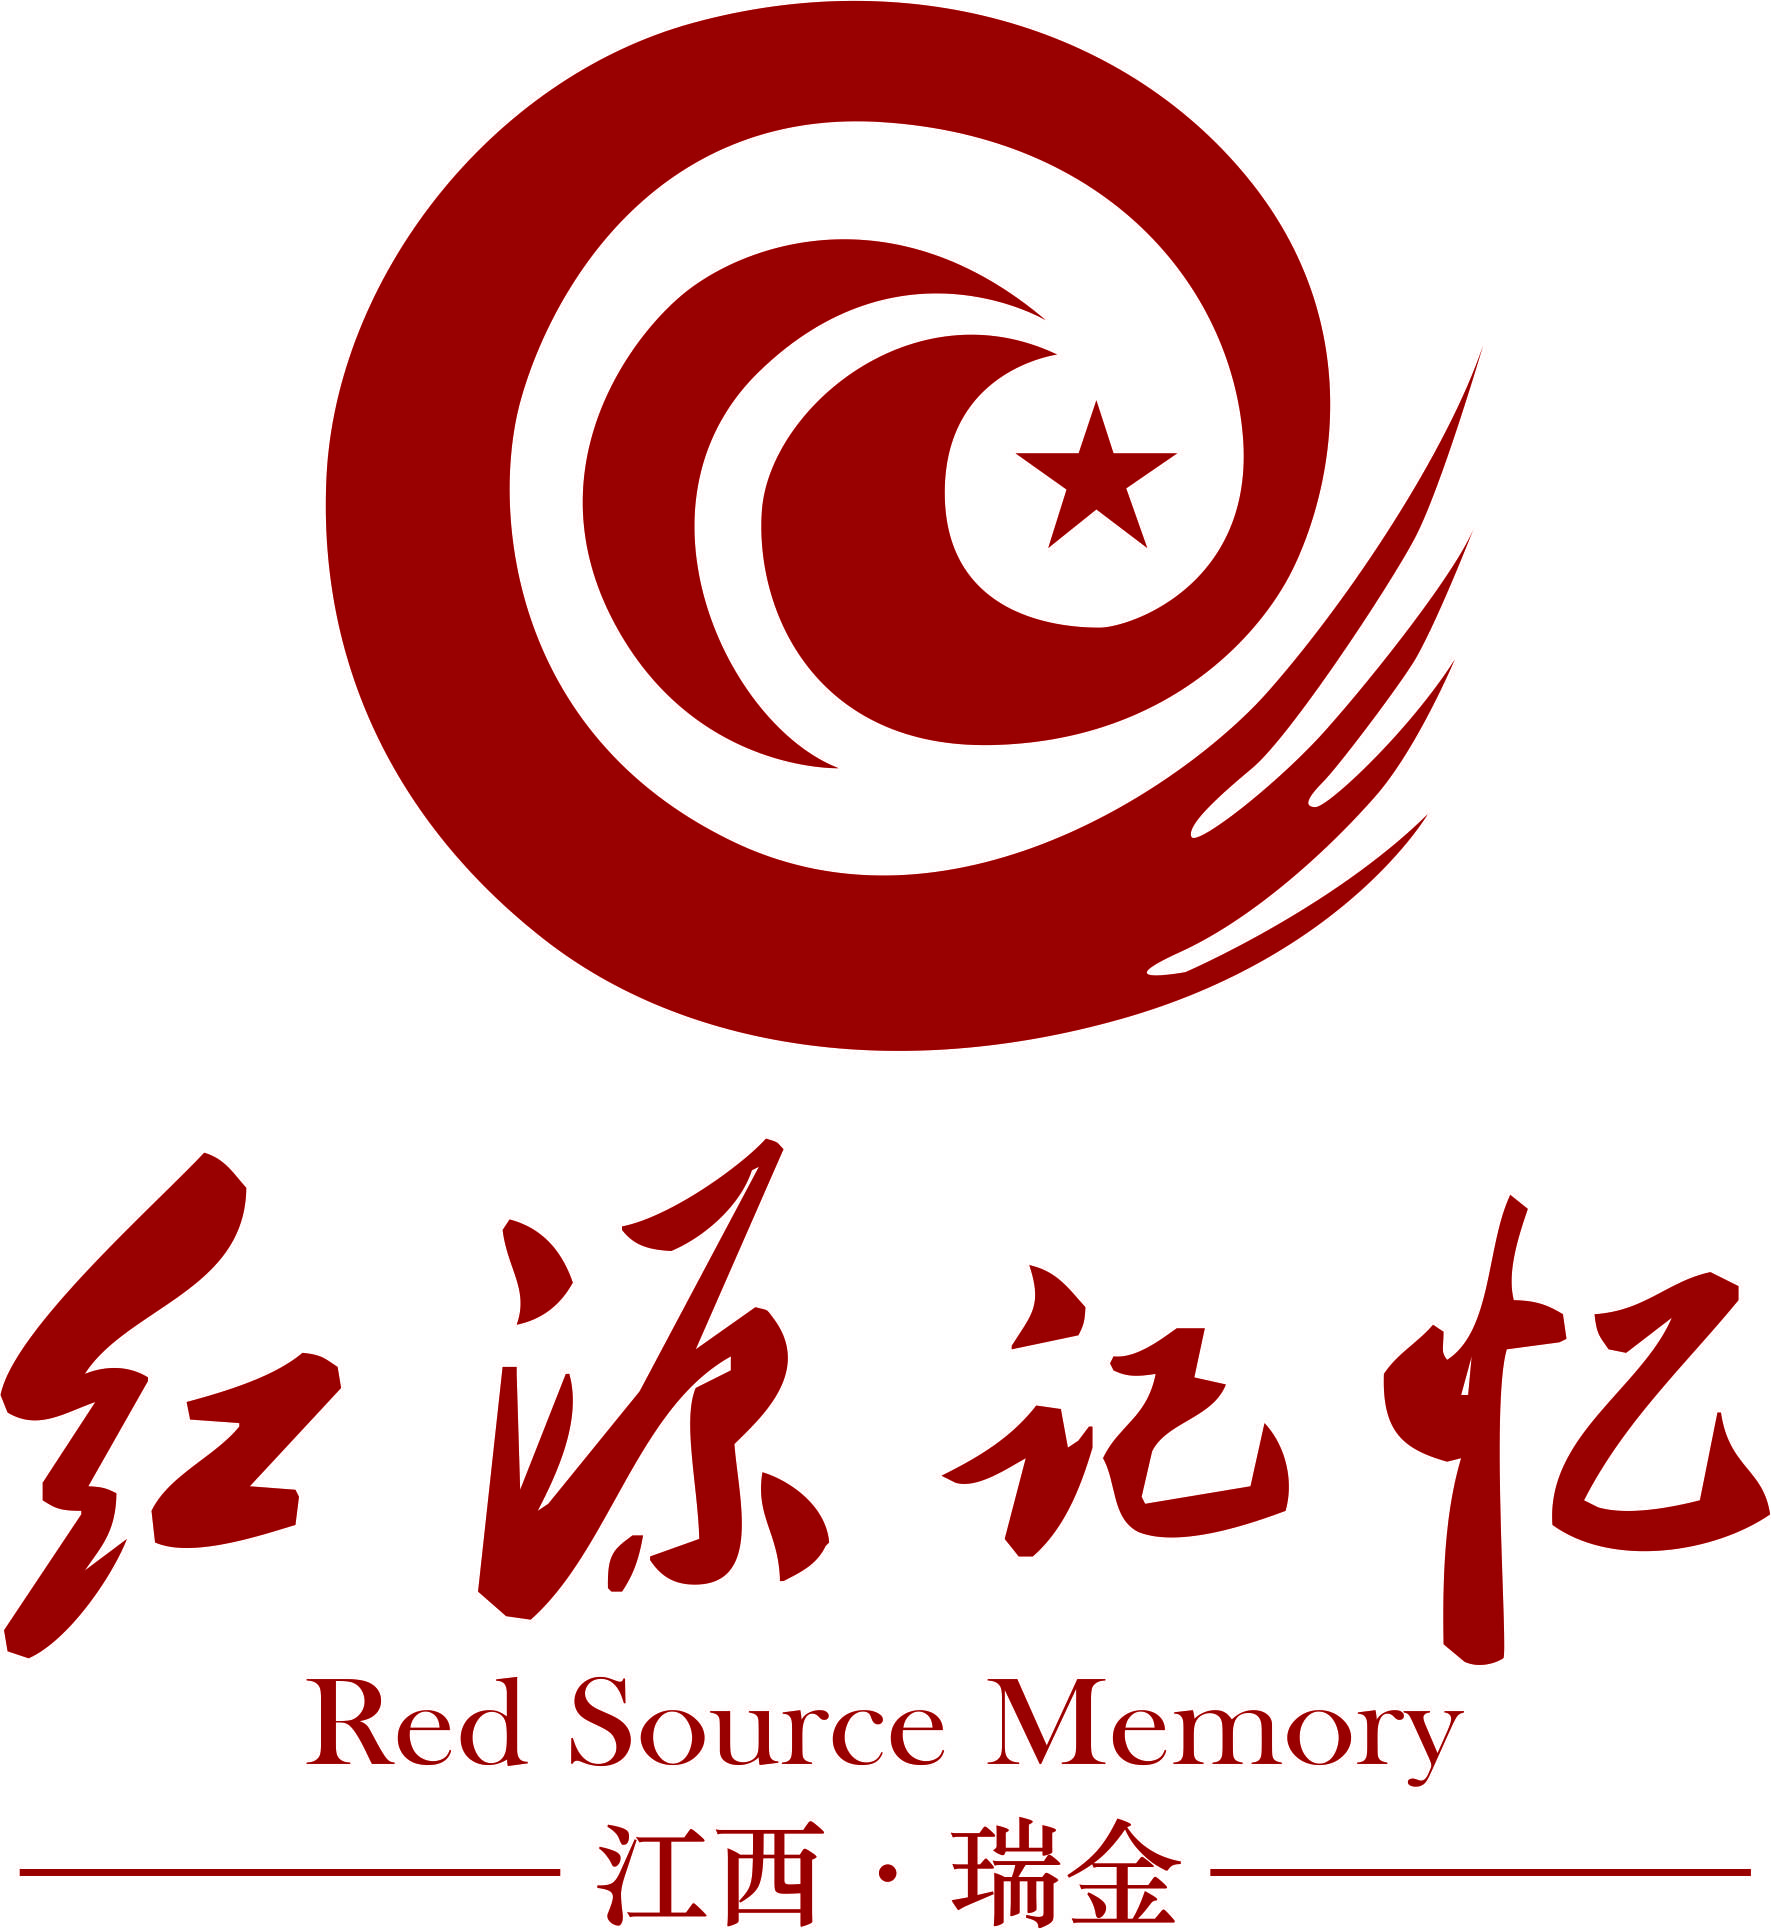 【红色文化】关于红军长征的那段历史你知道多少?讲清楚了!